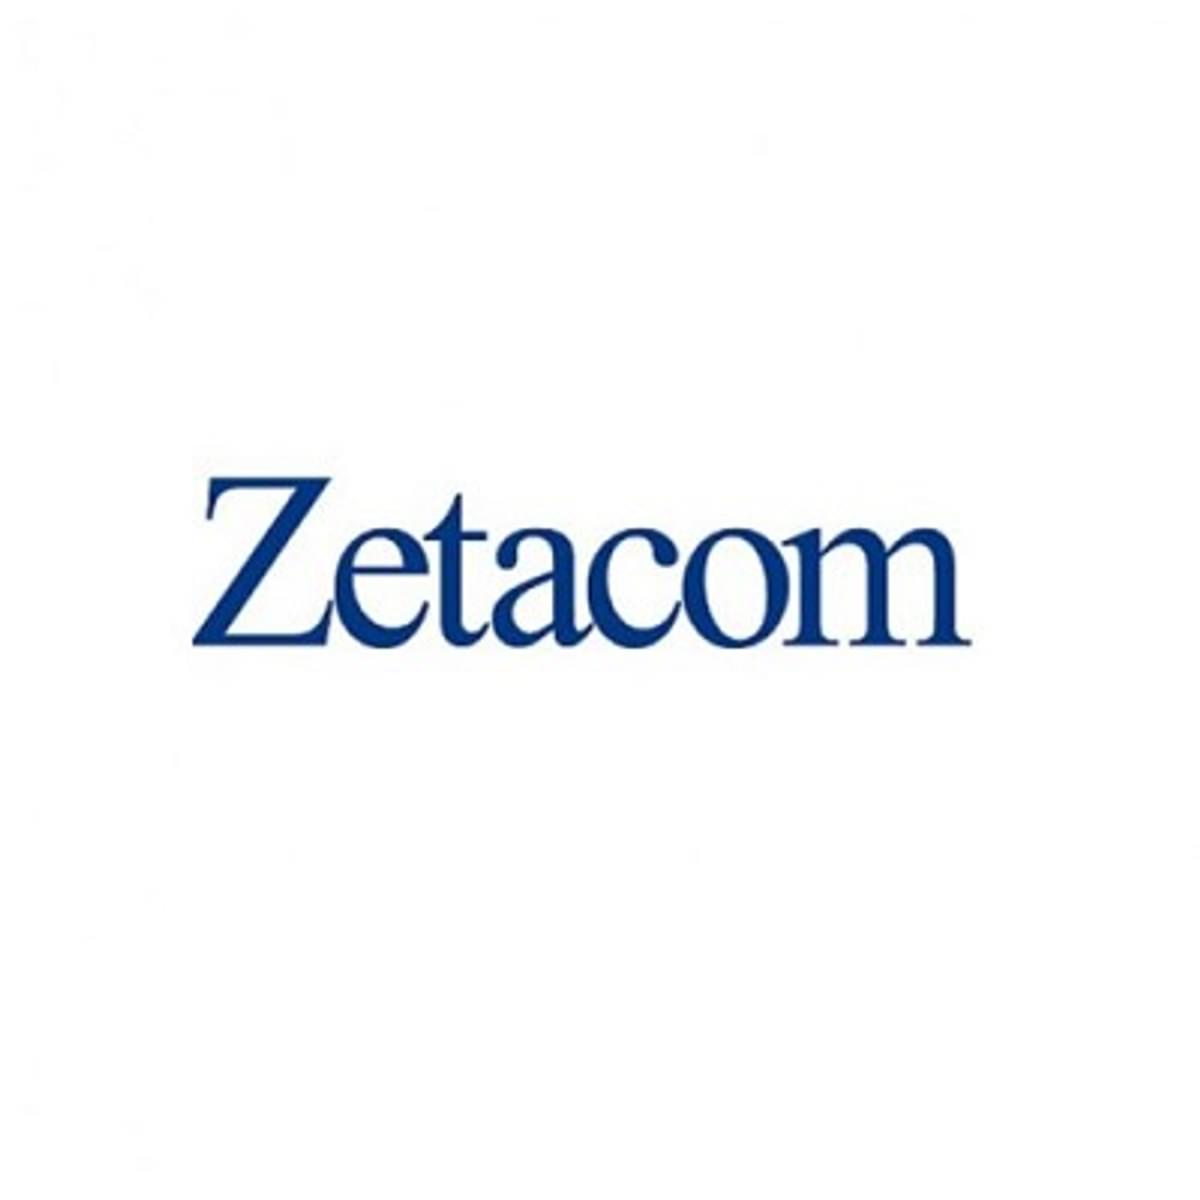 Winkels vanHaren krijgen één centrale communicatieomgeving van Zetacom image